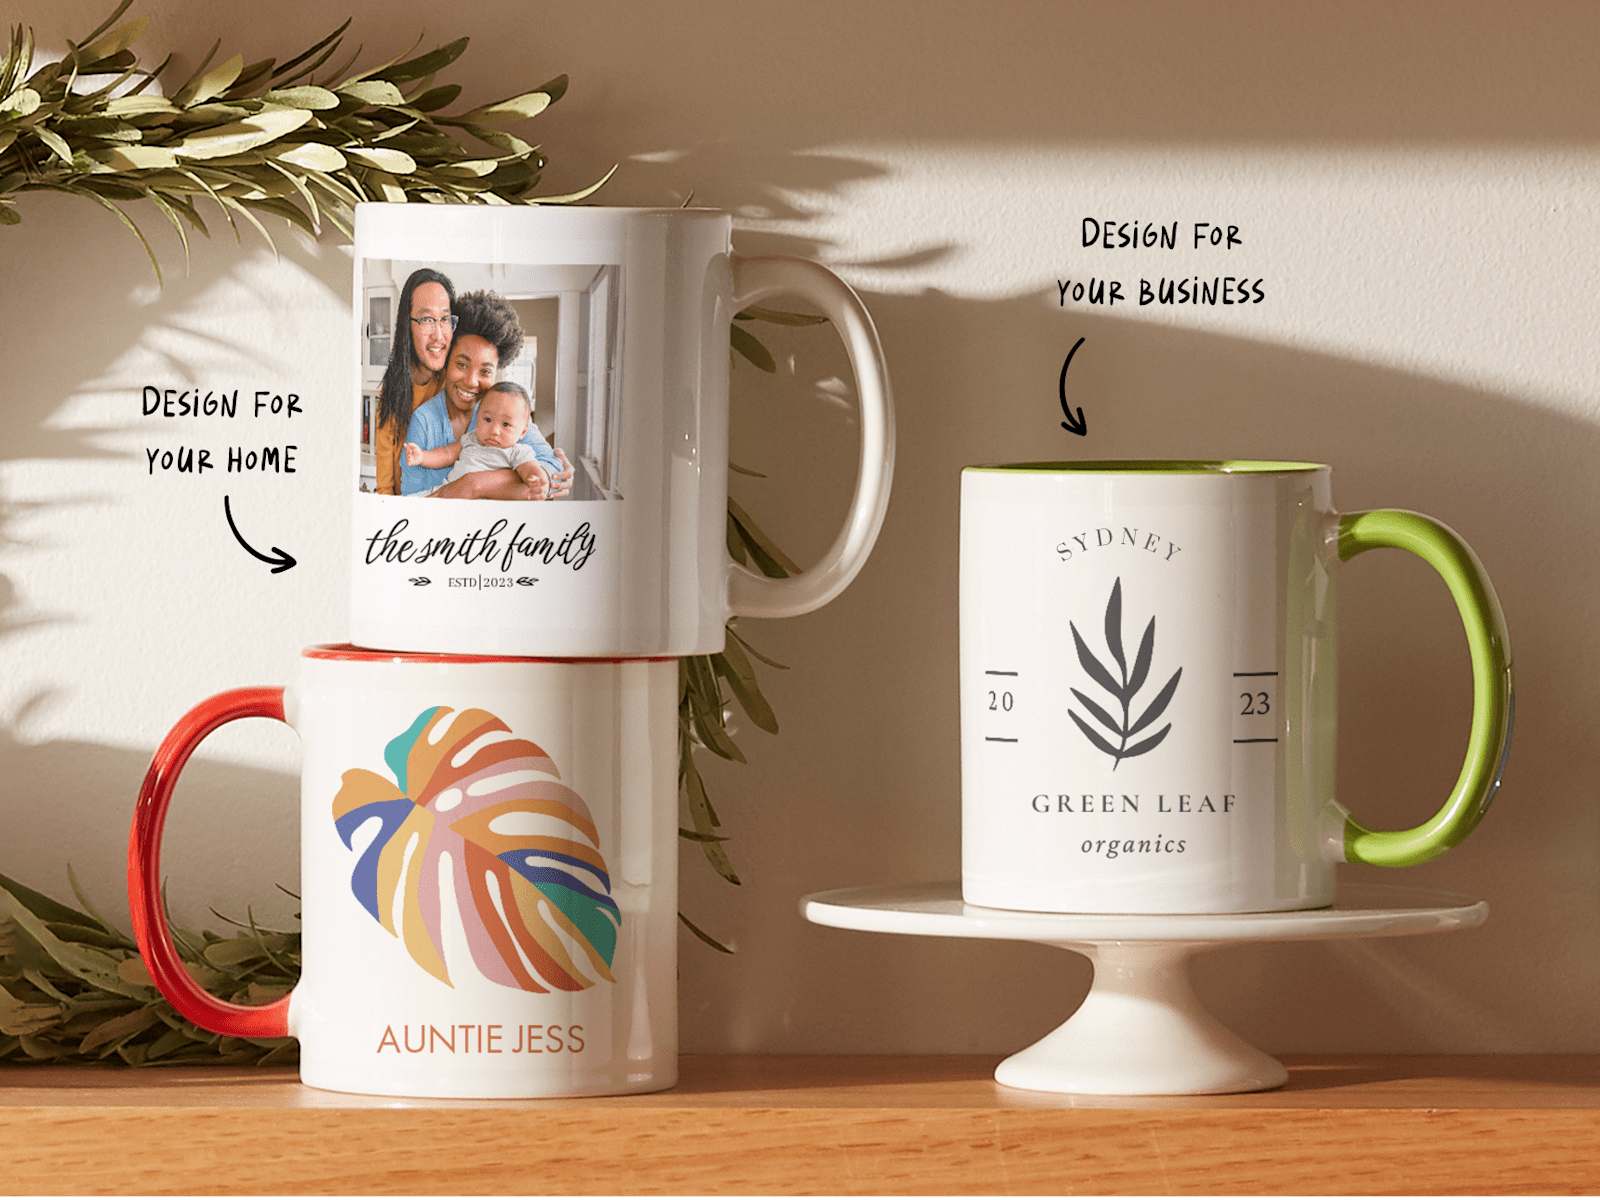 Larger version: Personalised mugs